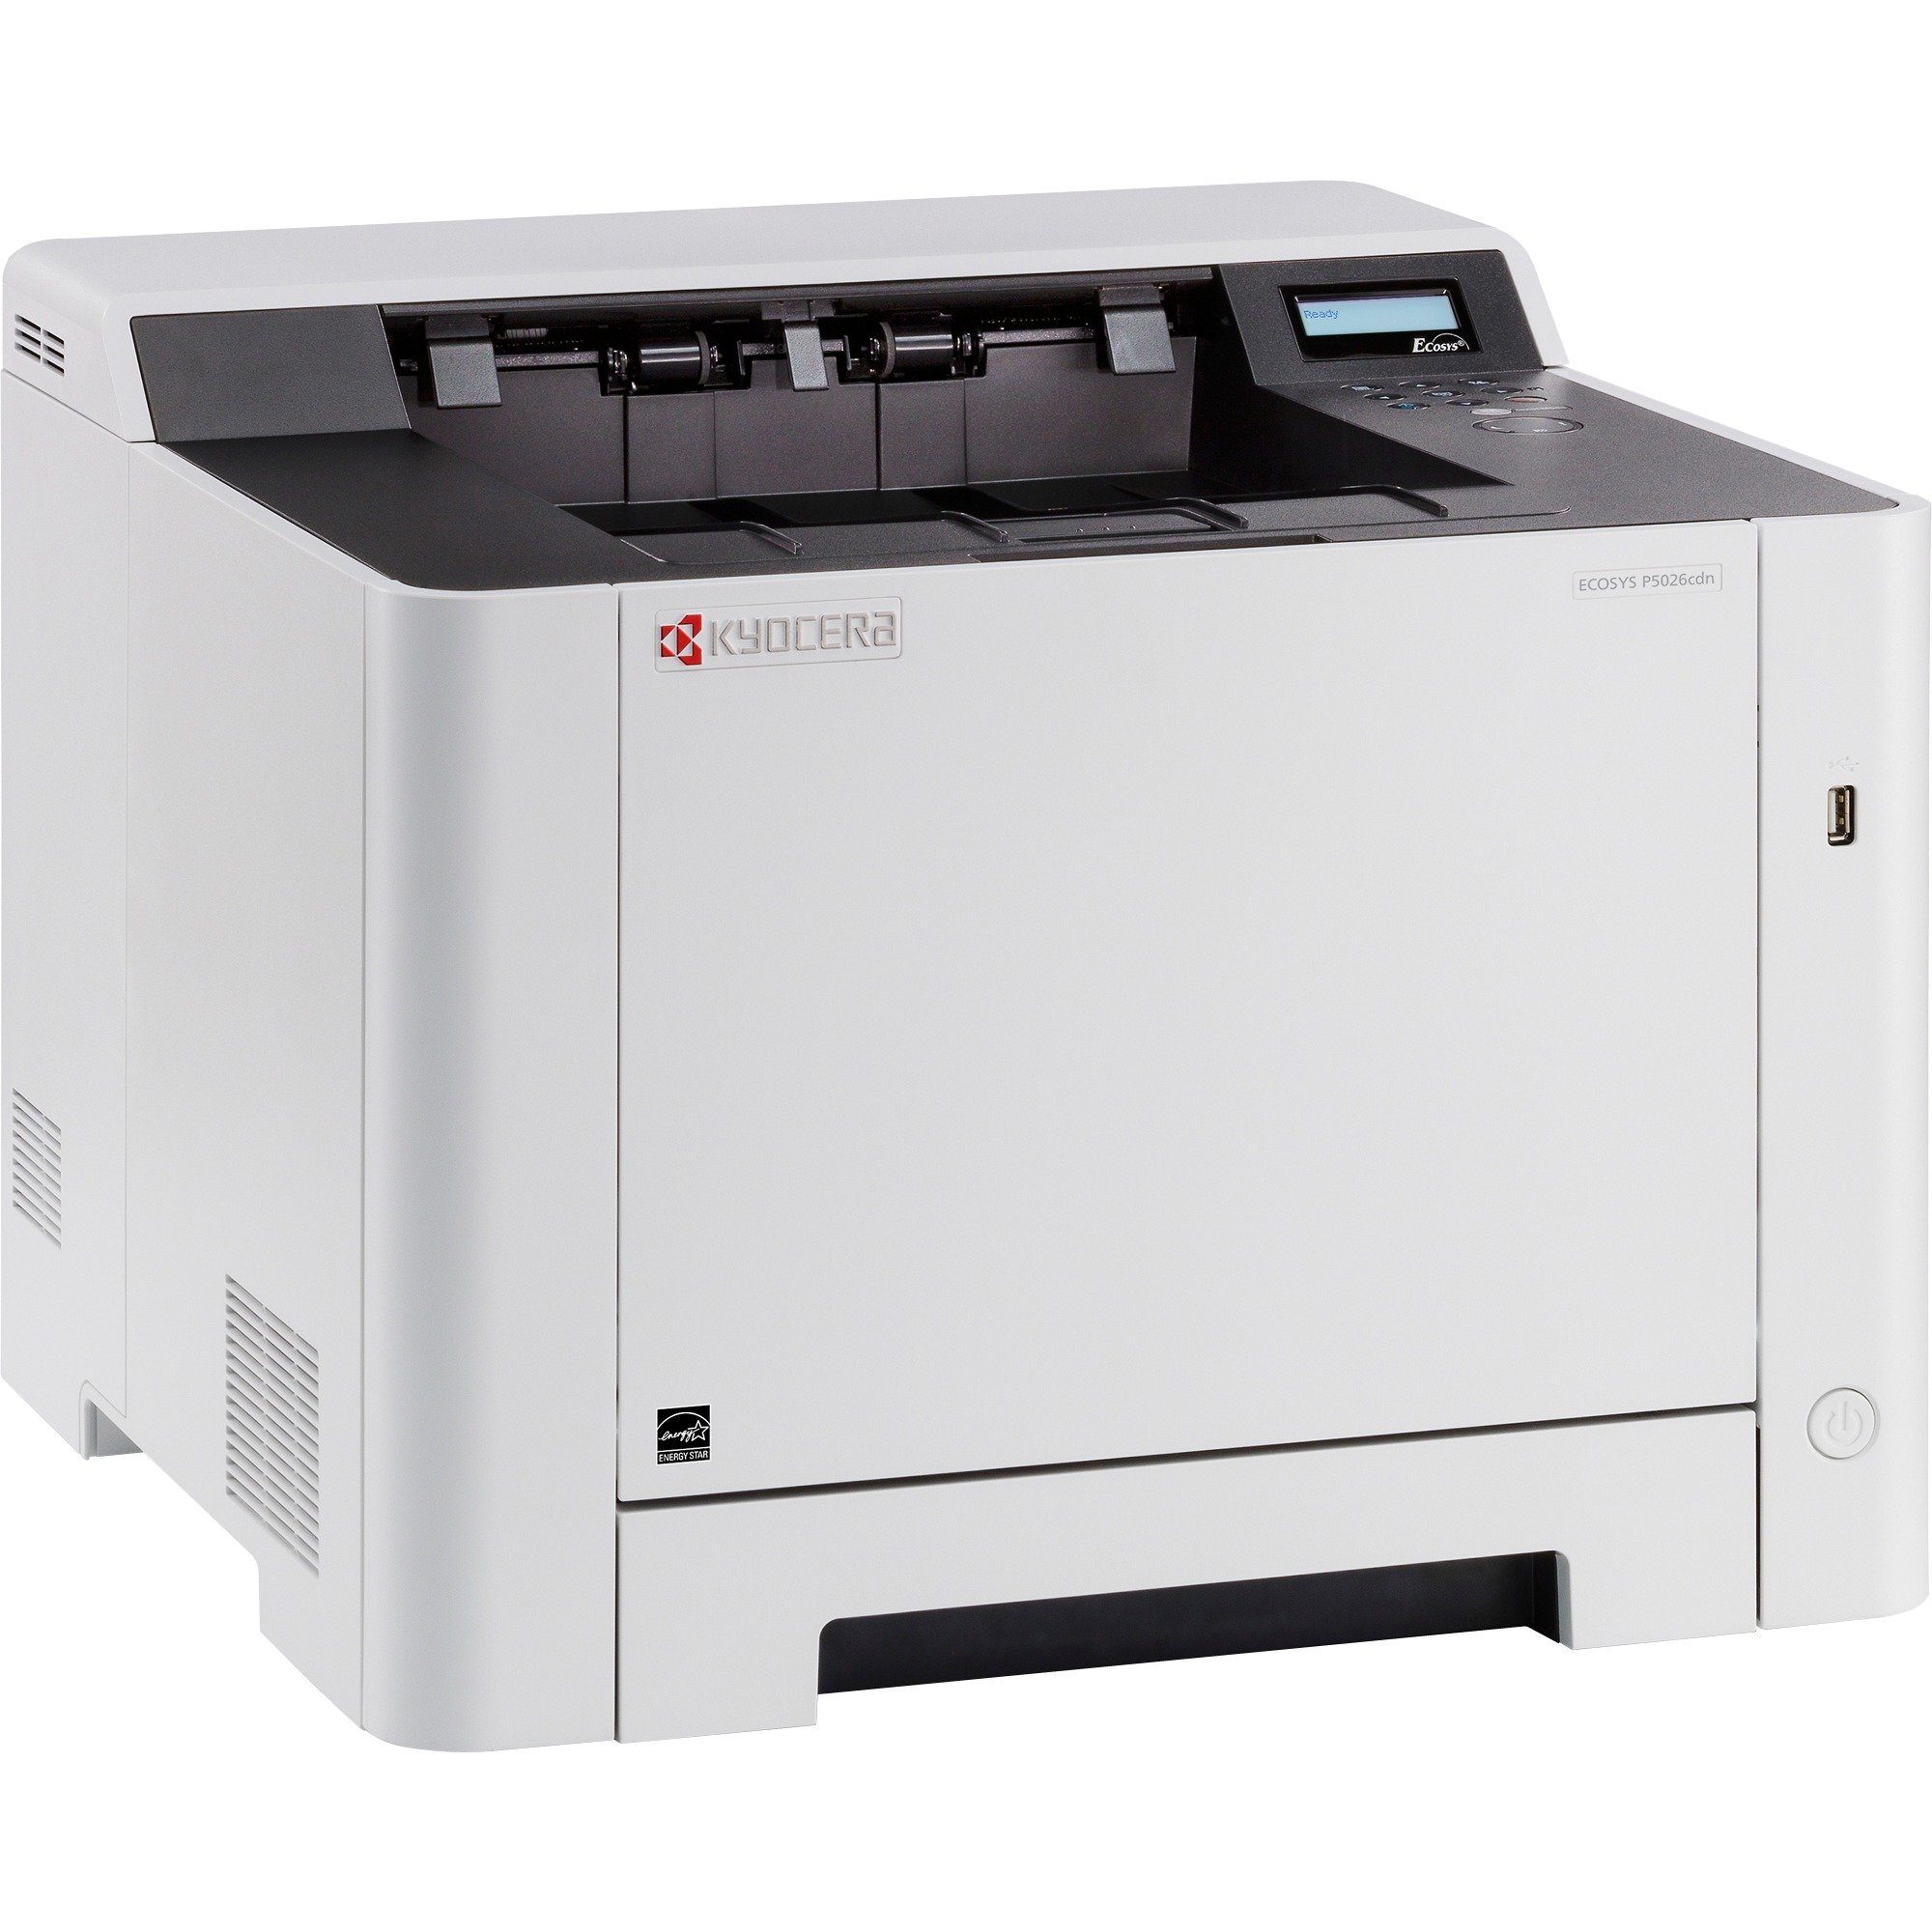 Kyocera ECOSYS P5026cdn Multifunktionsdrucker